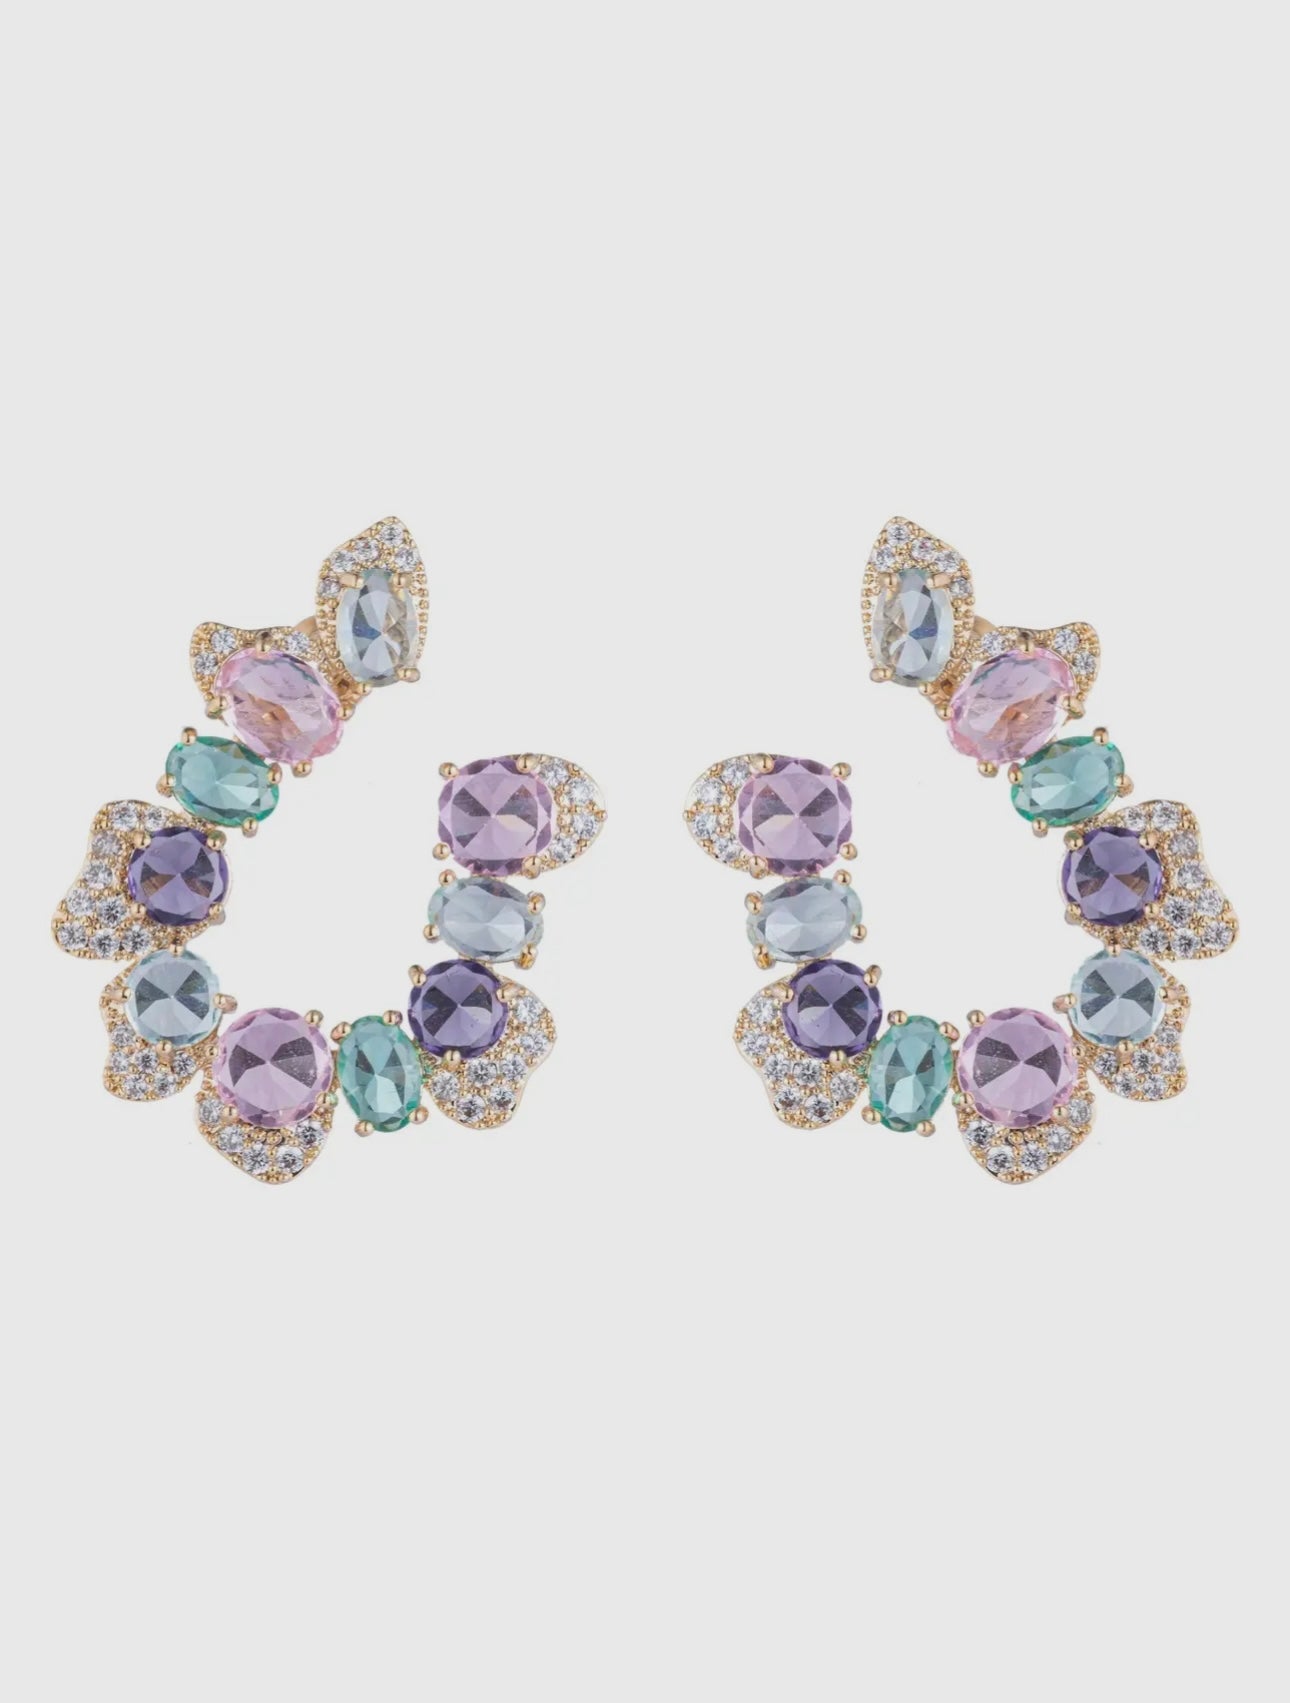 Princess crystal earrings